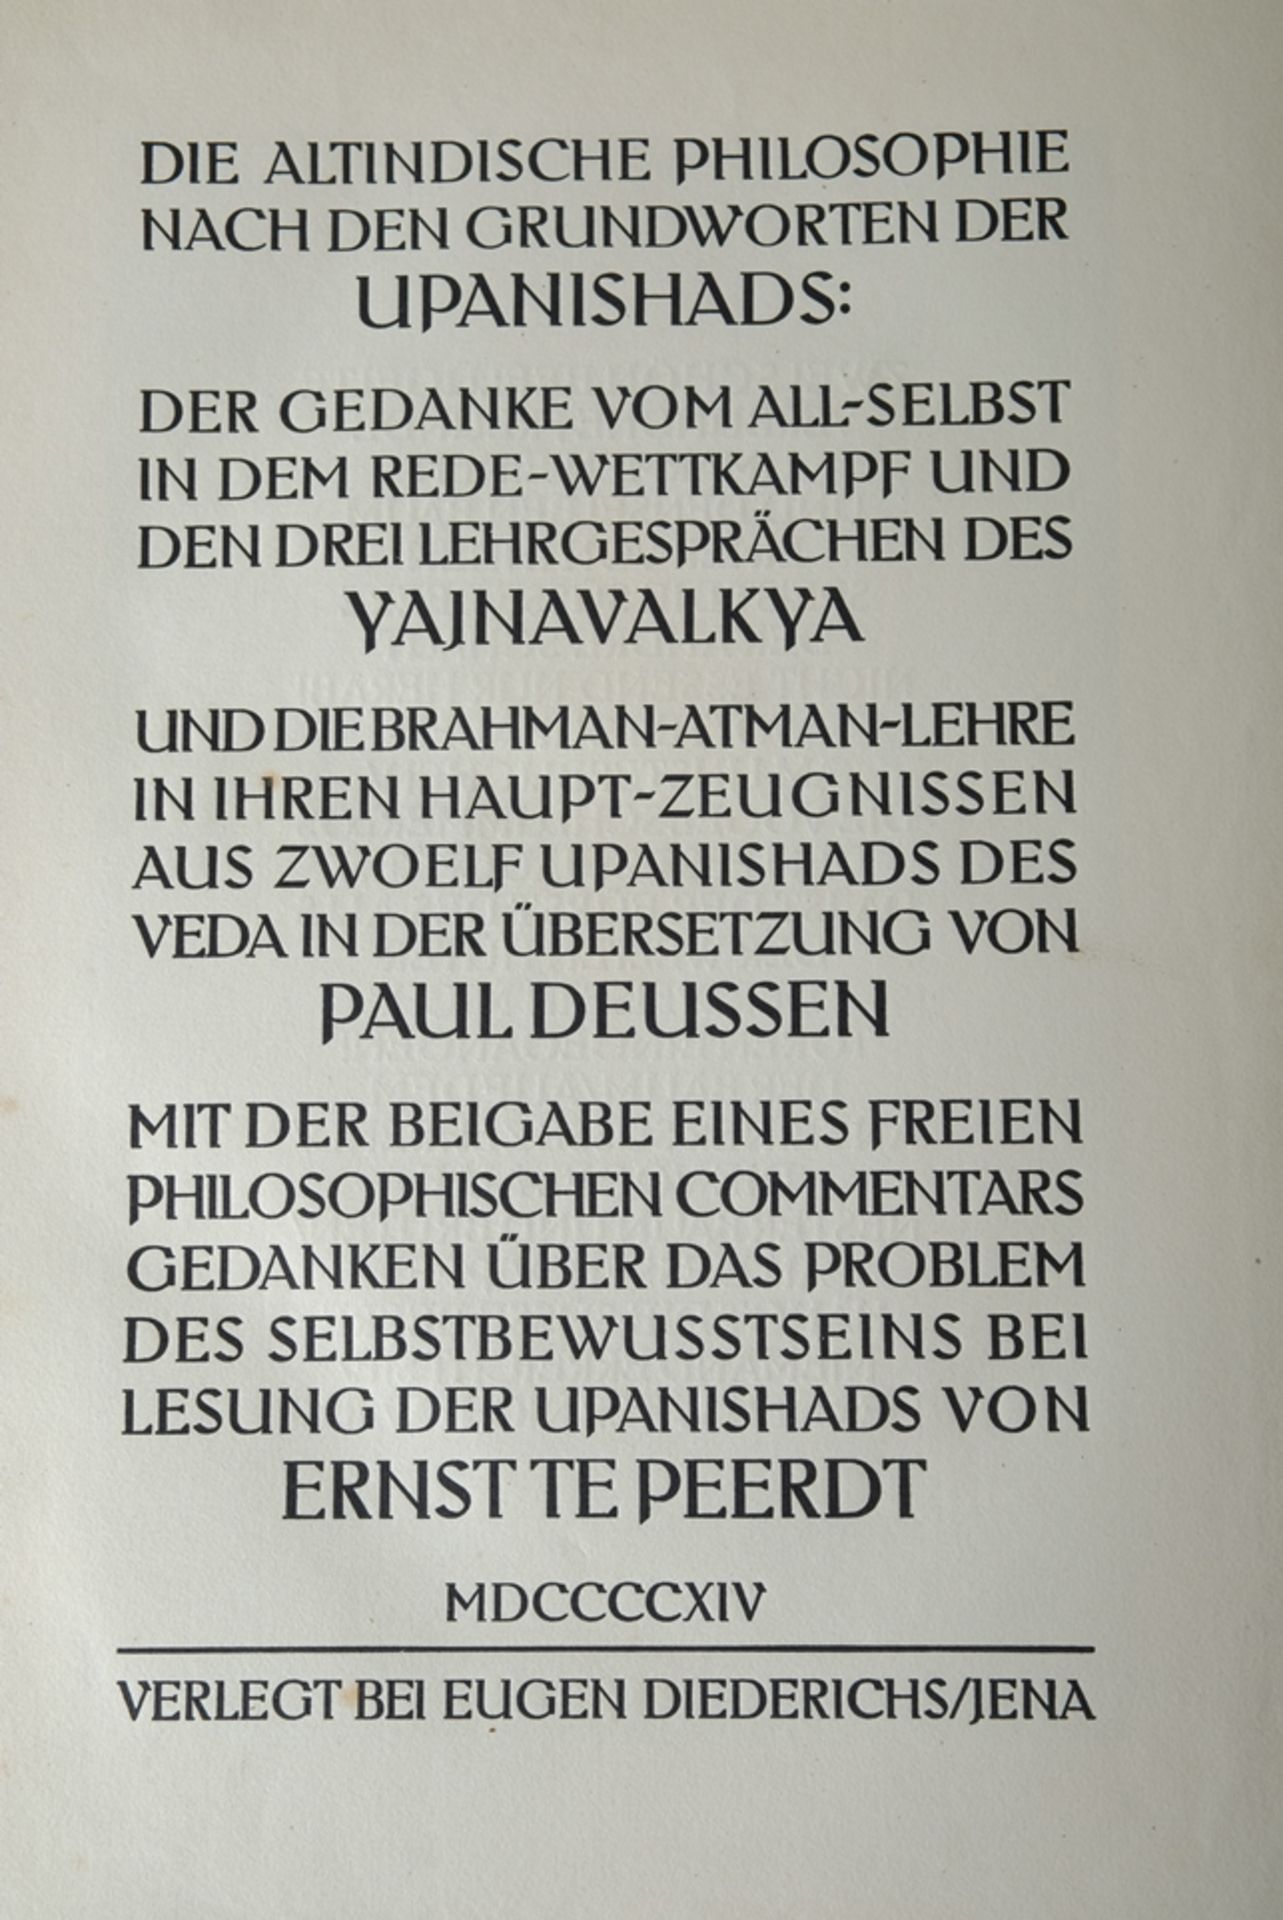 Diederichs, Eugen (Hrsg.) "Die Grundworte des Indischen Monismus", aus den Upanishads des Veda, 191 - Bild 3 aus 7